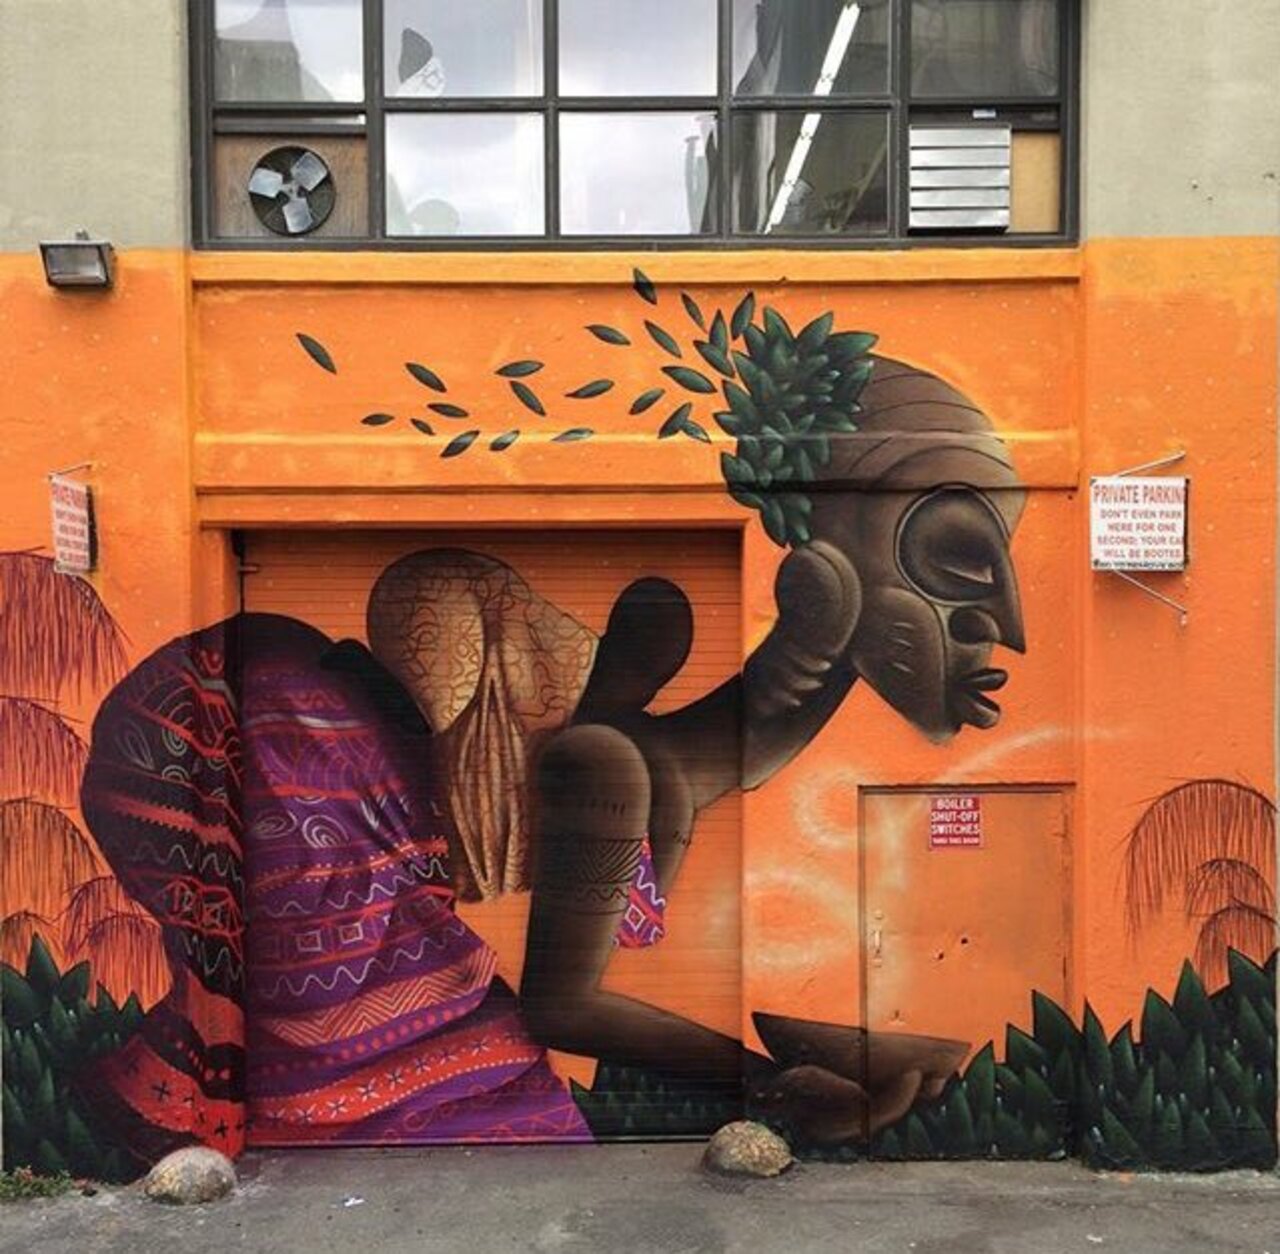 RT @eliothpy: New Street Art by Alexandre Keto in NYC 

#art #graffiti #mural #streetart https://t.co/uX4kI6JwOg